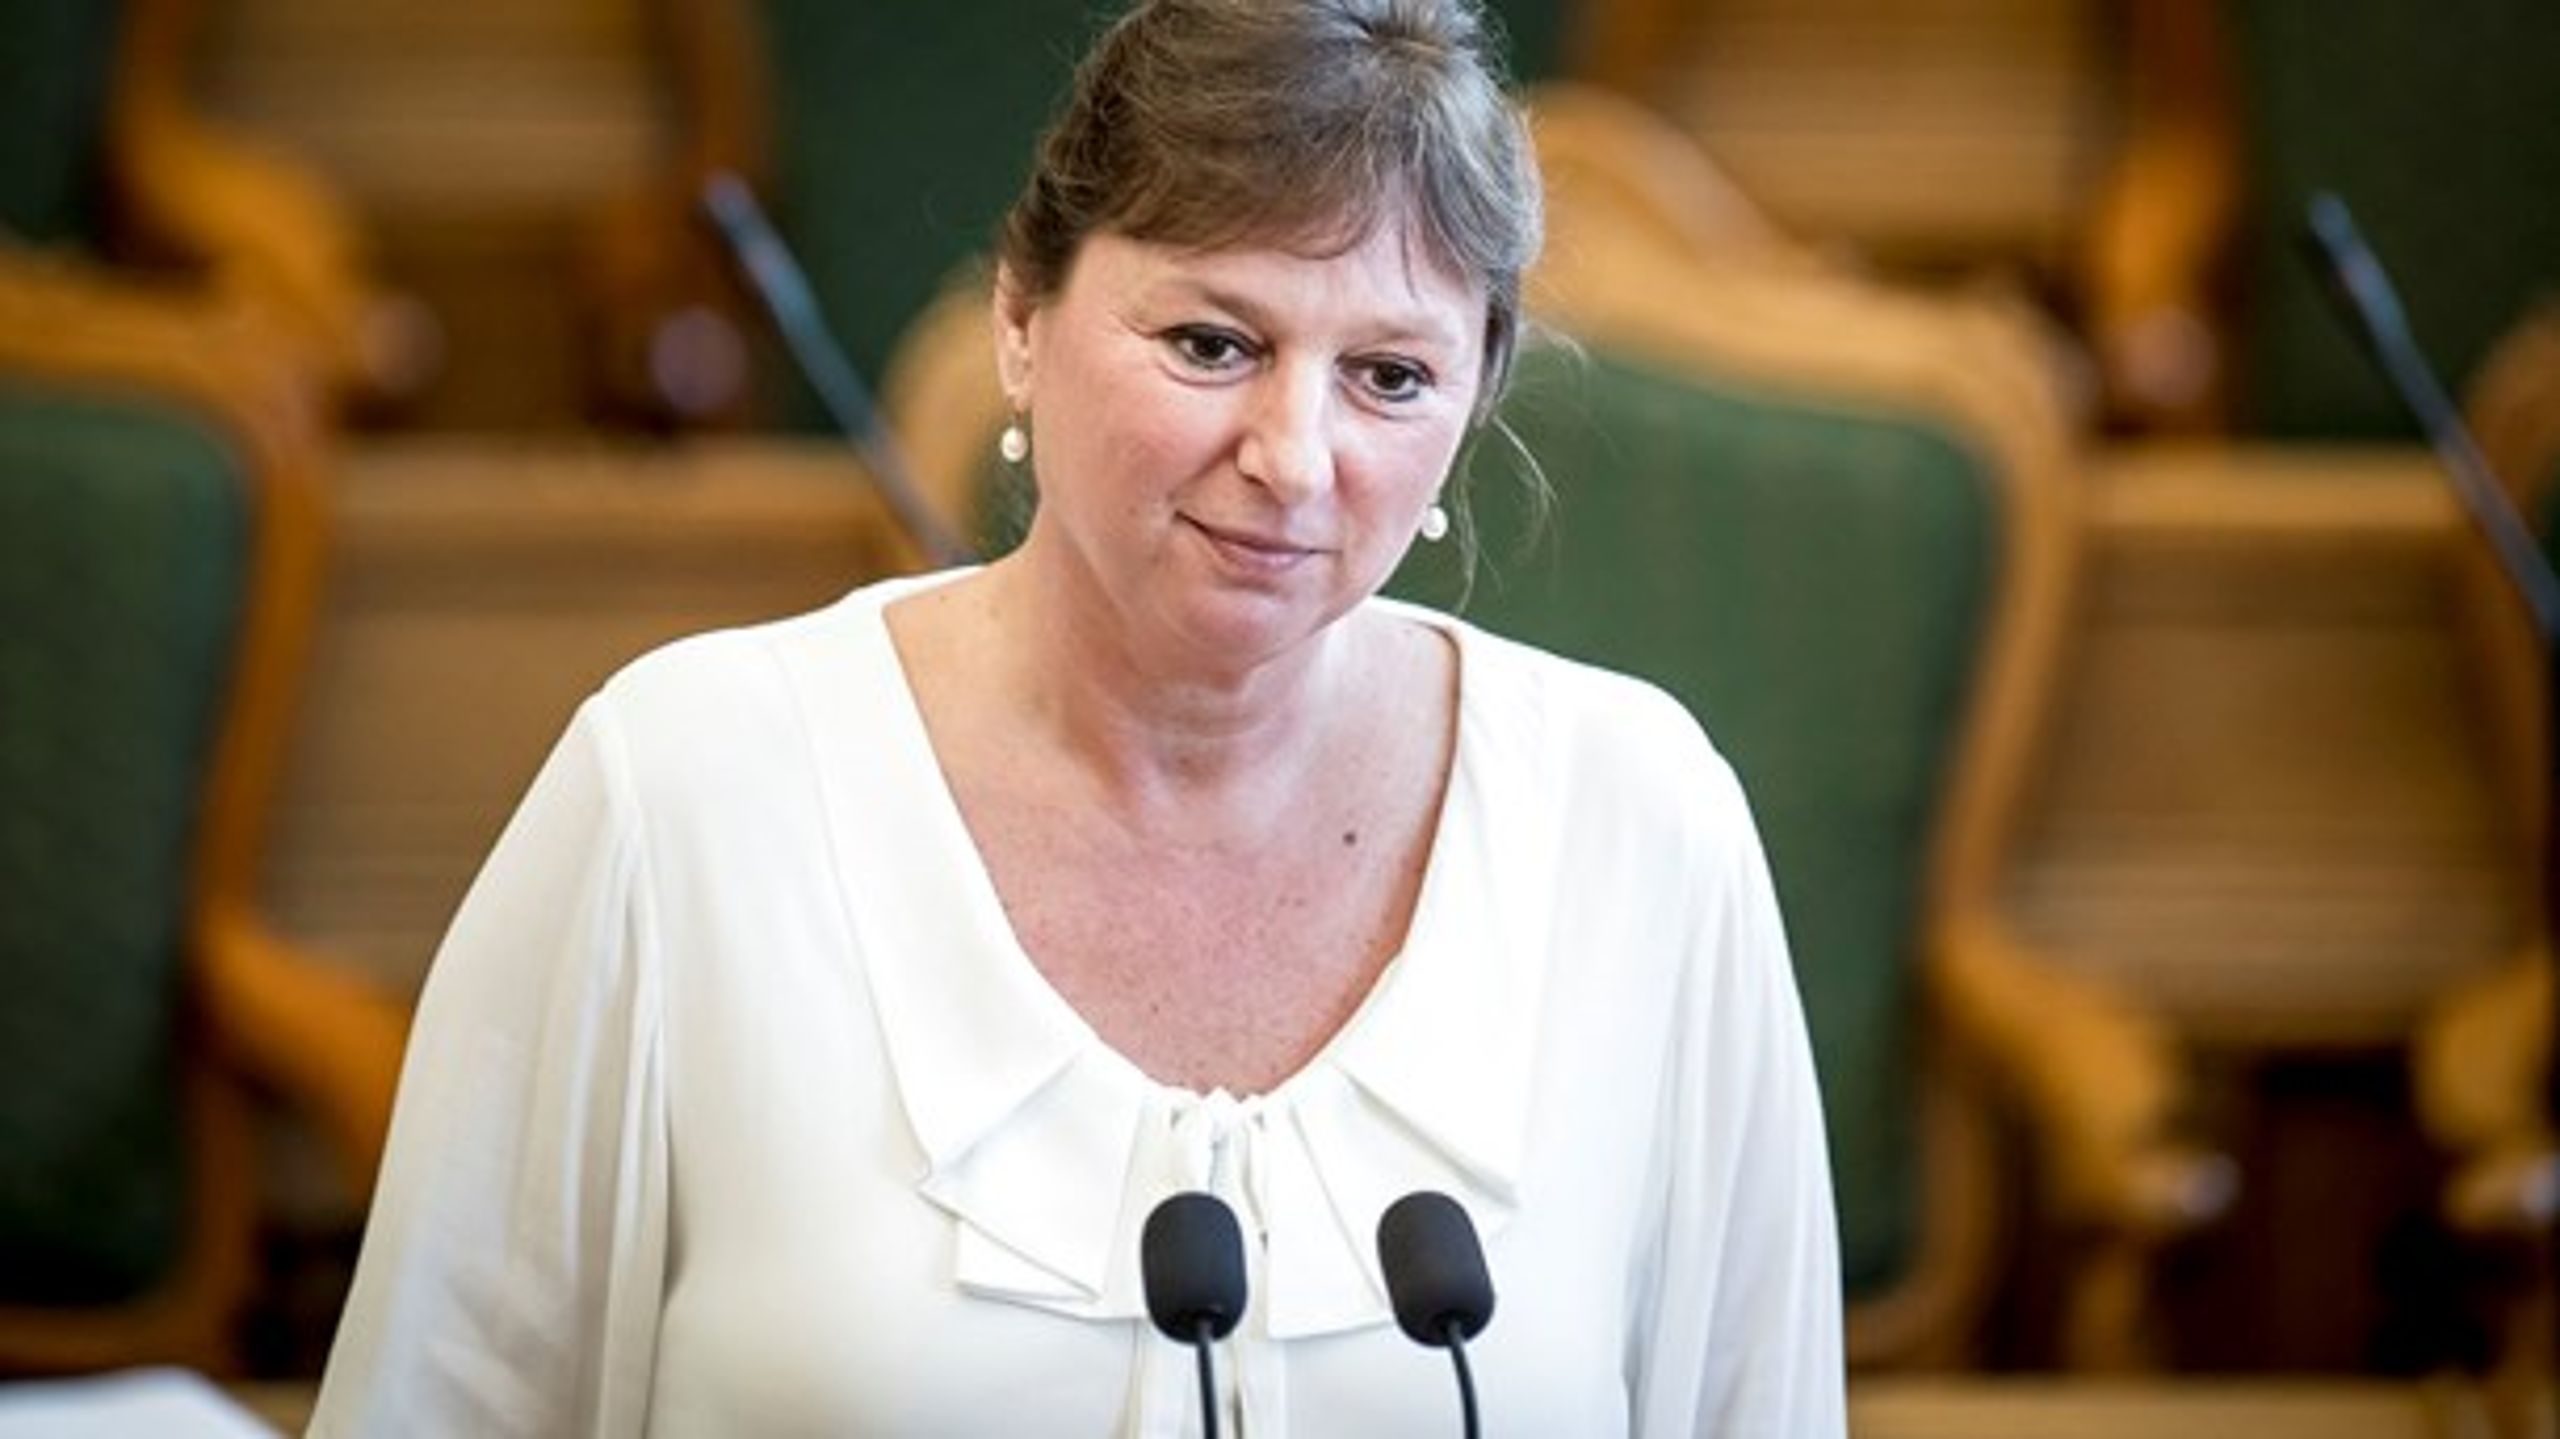 Dyrevelfærdsordfører Karina Due (DF) har efterlyst ambitioner i regeringens forslag til en ny dyrevelfærdslov, men en ny formålsbestemmelse gør Dansk Folkeparti positivt stemt over for lovforslaget.